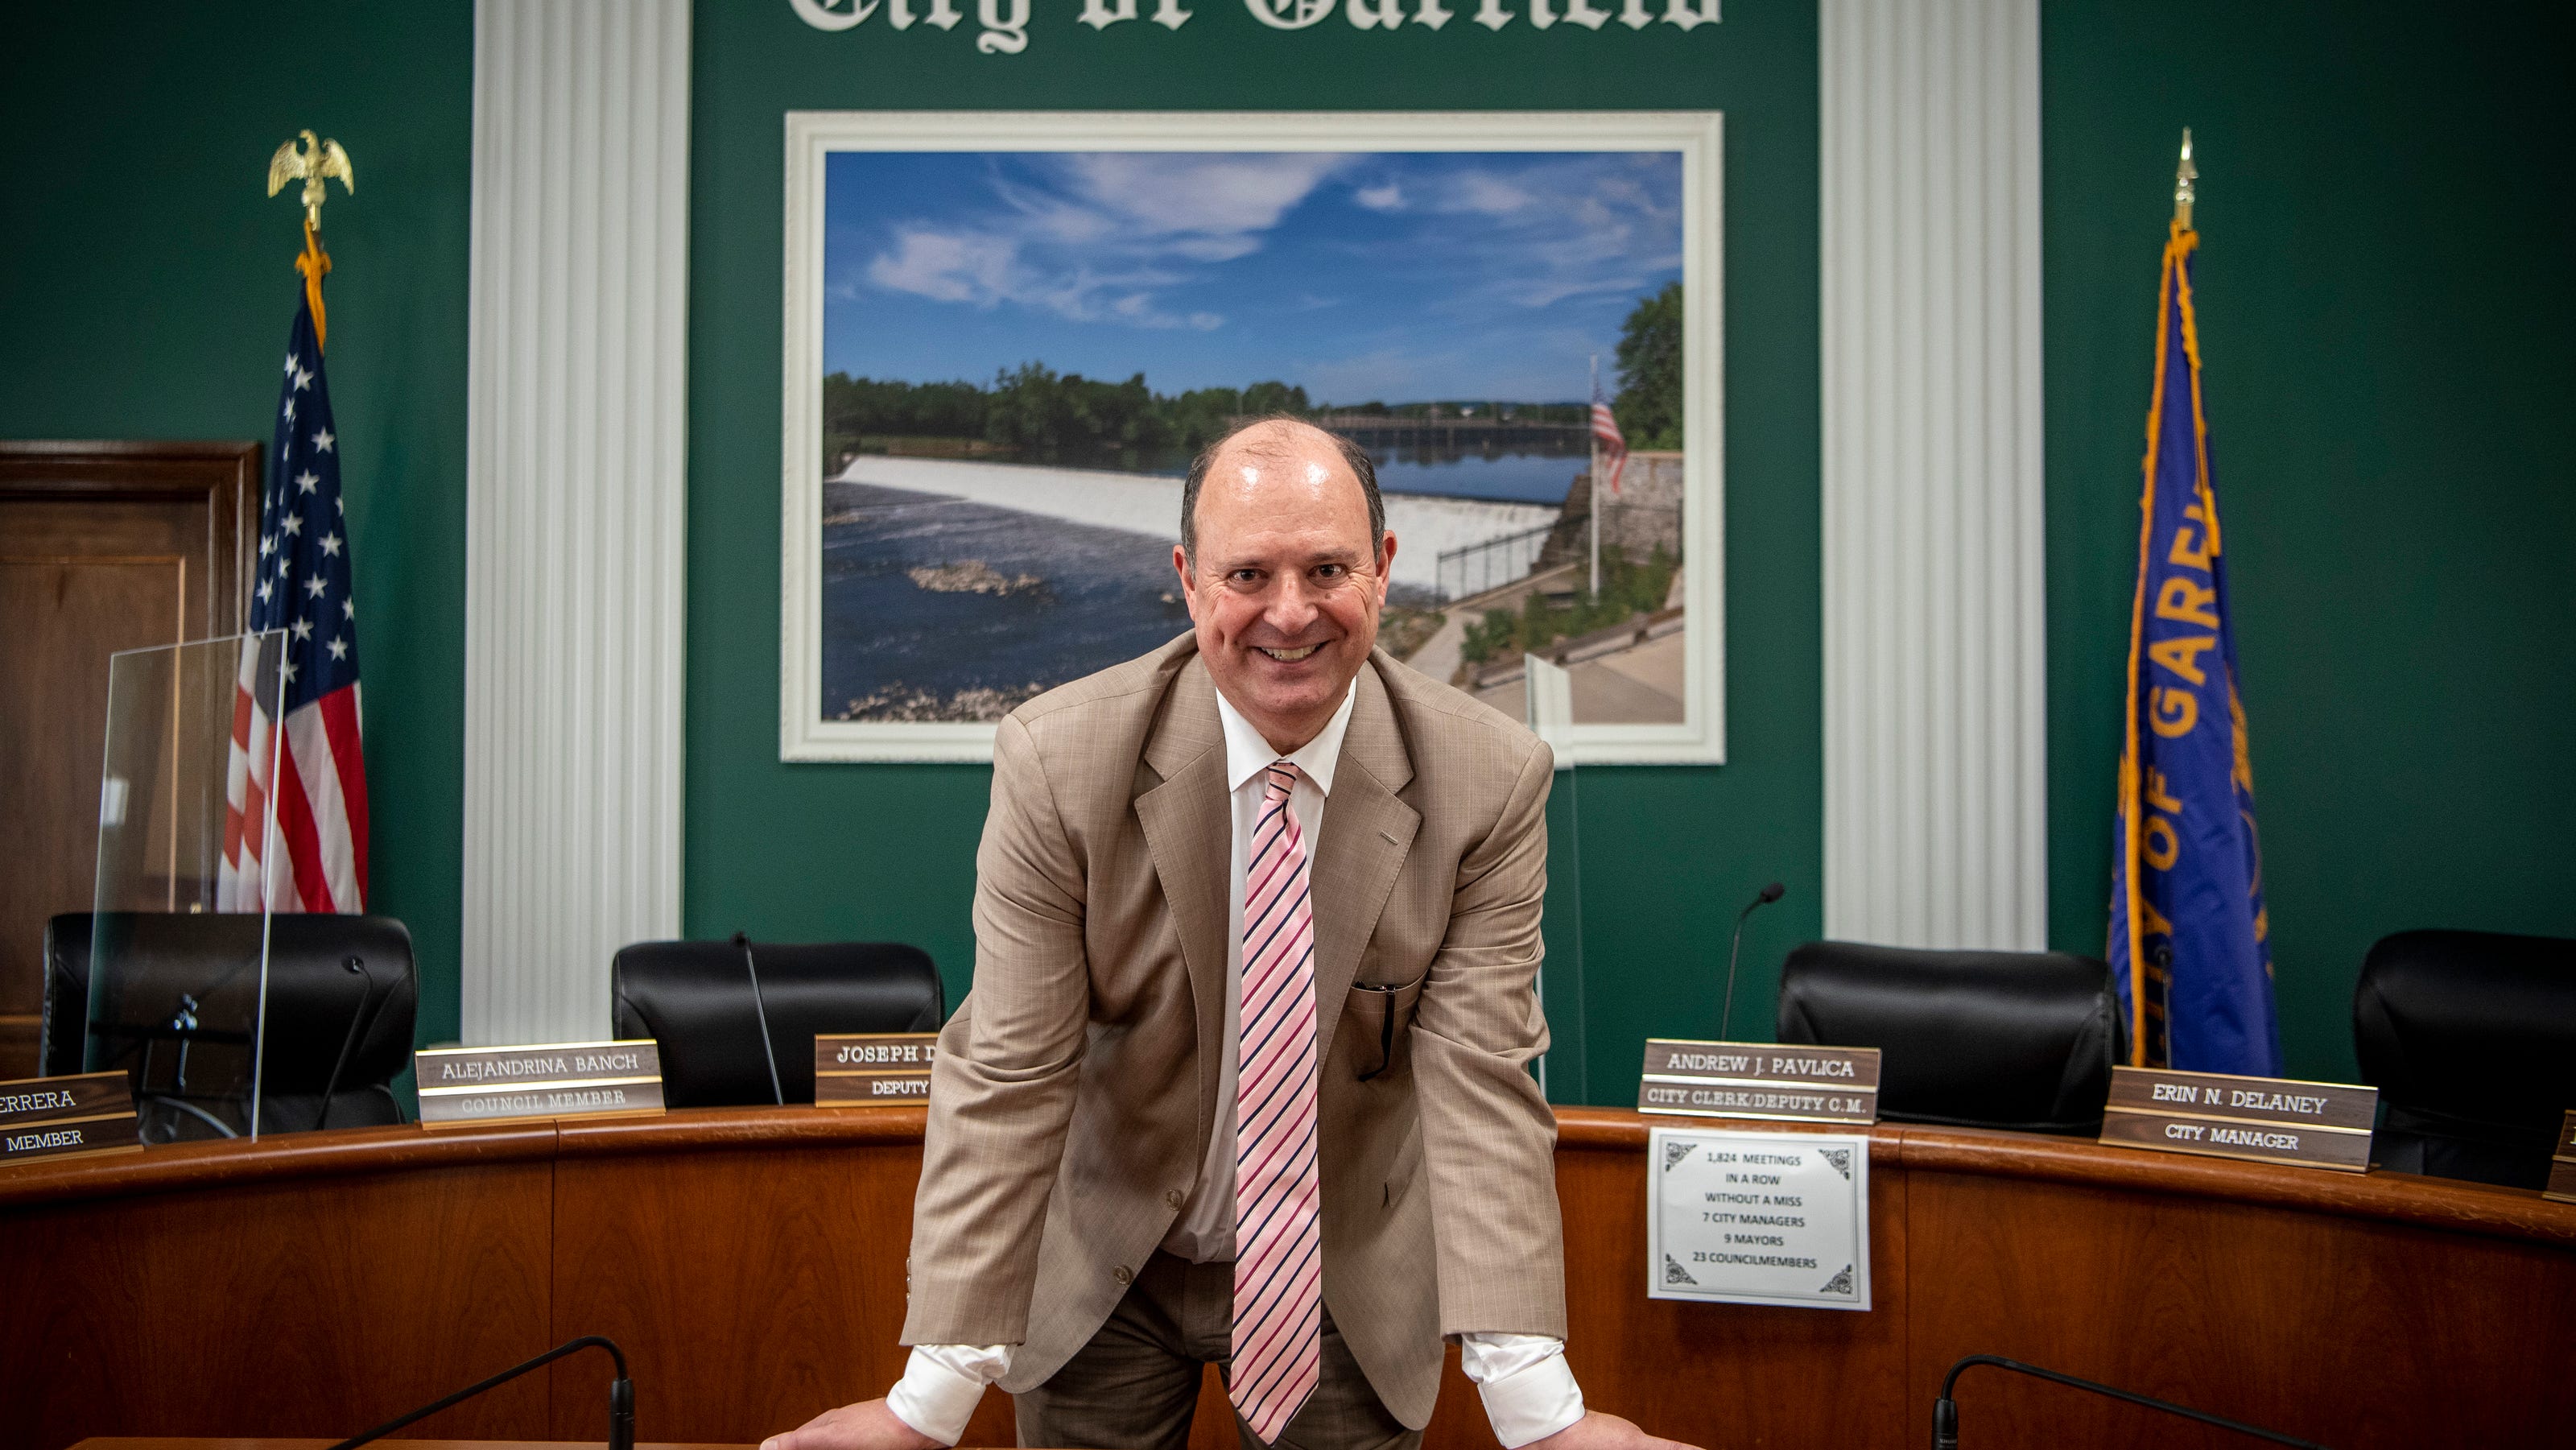 Garfield NJ clerk Andrew Pavlica is retiring after 34 years